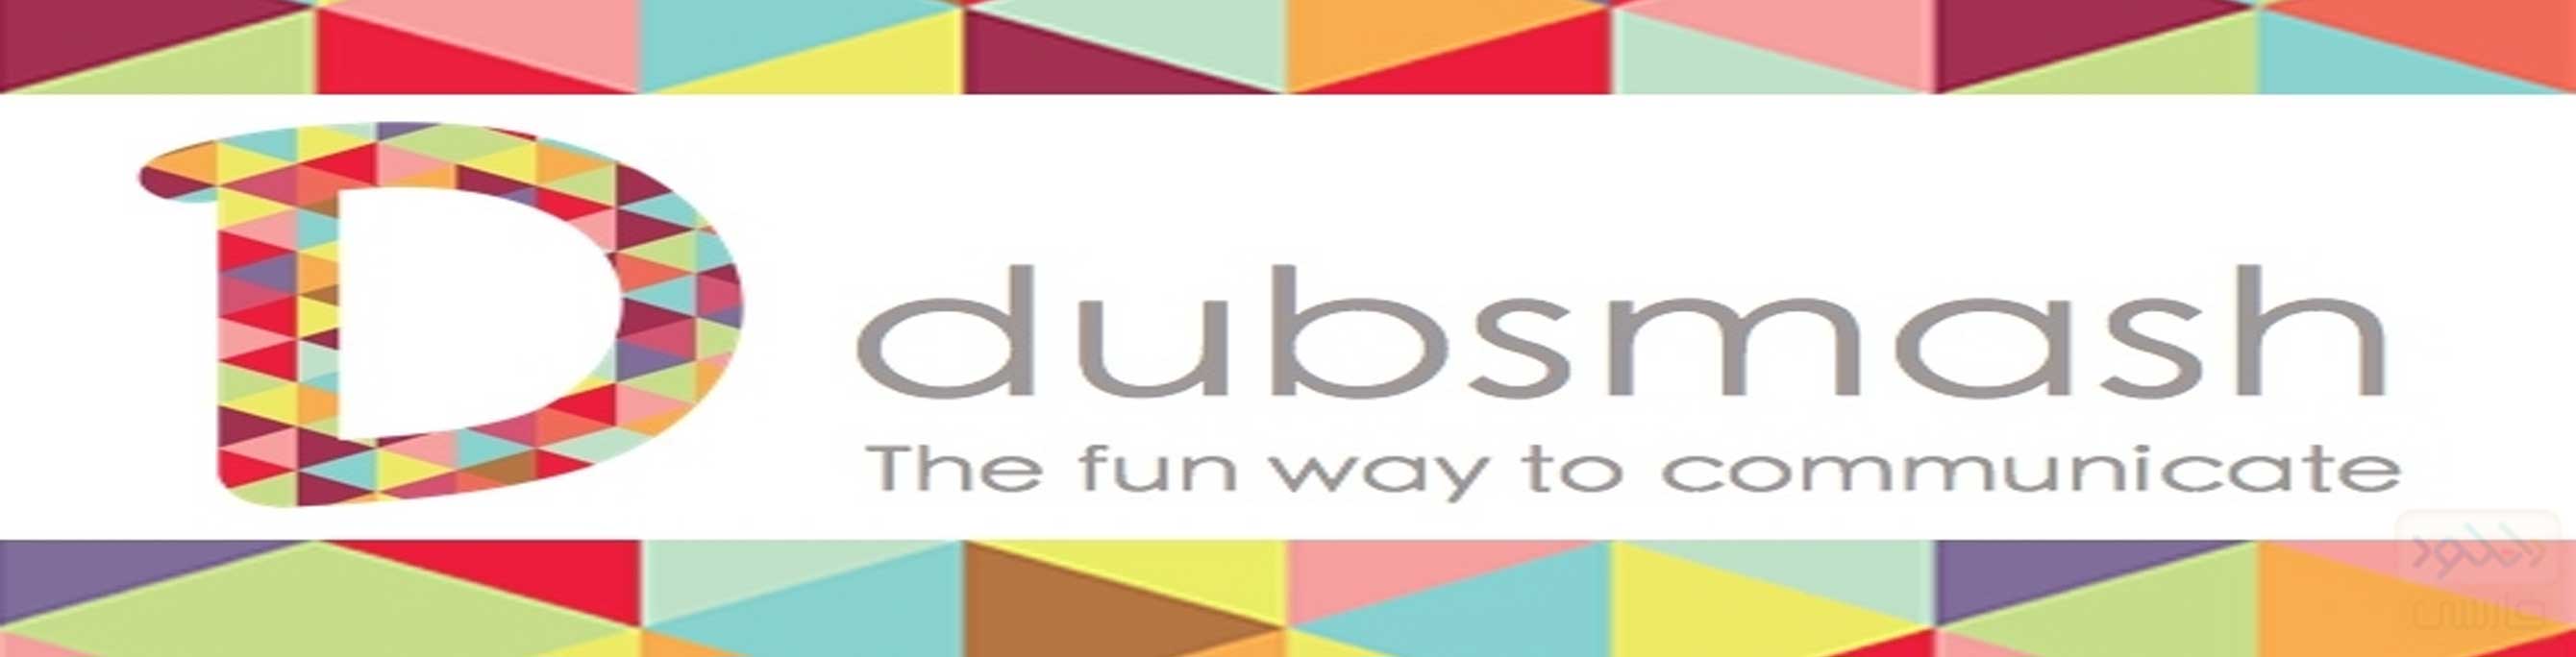 دانلود نرم افزار شبکه اجتماعی Dubsmash برای اندروید و iOS